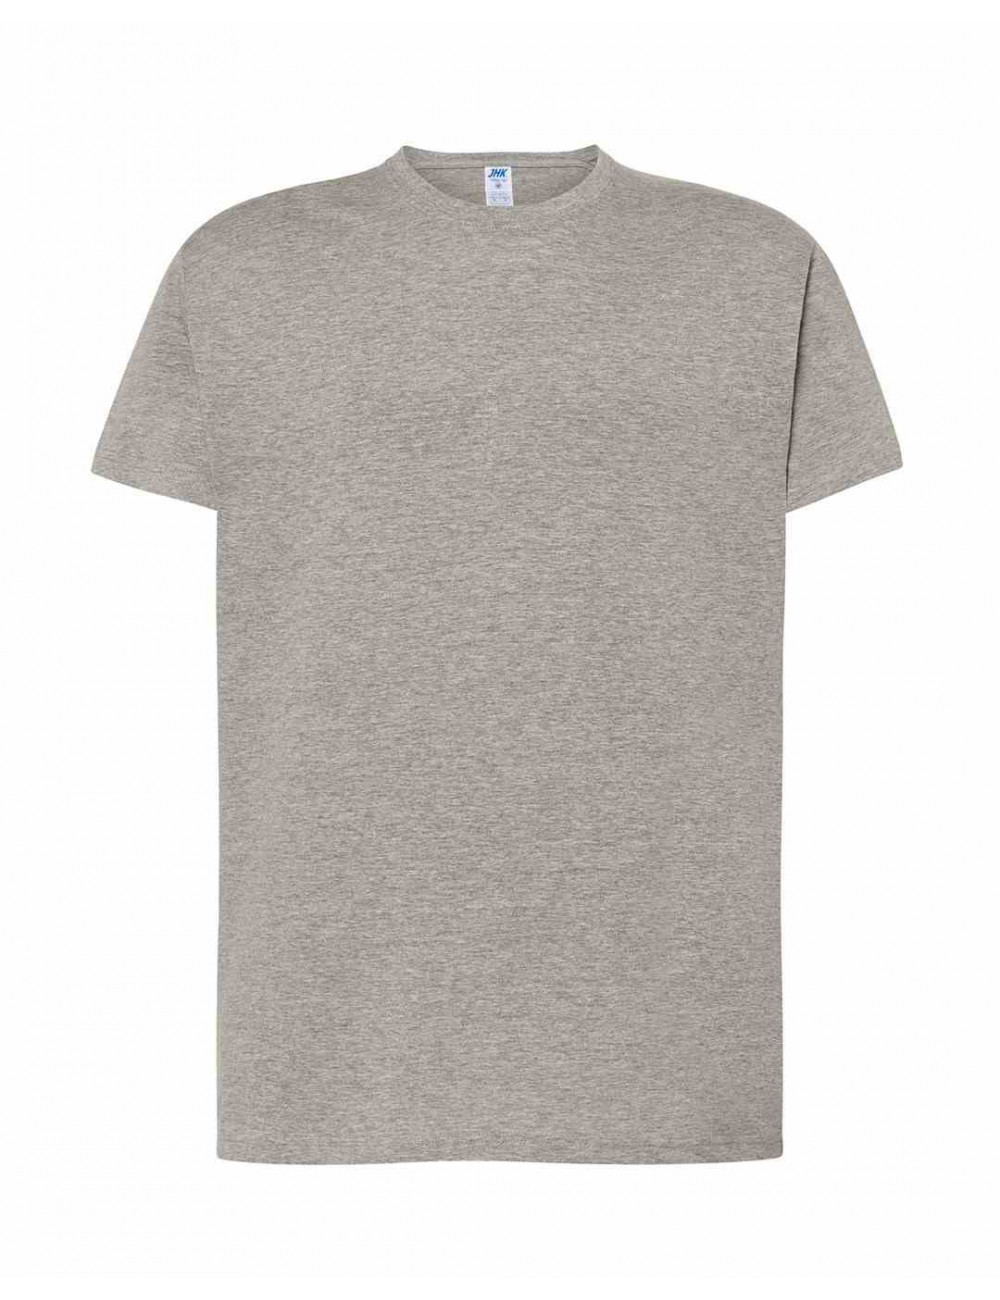 Koszulka męska ts ocean t-shirt 145 g gm - grey melange Jhk